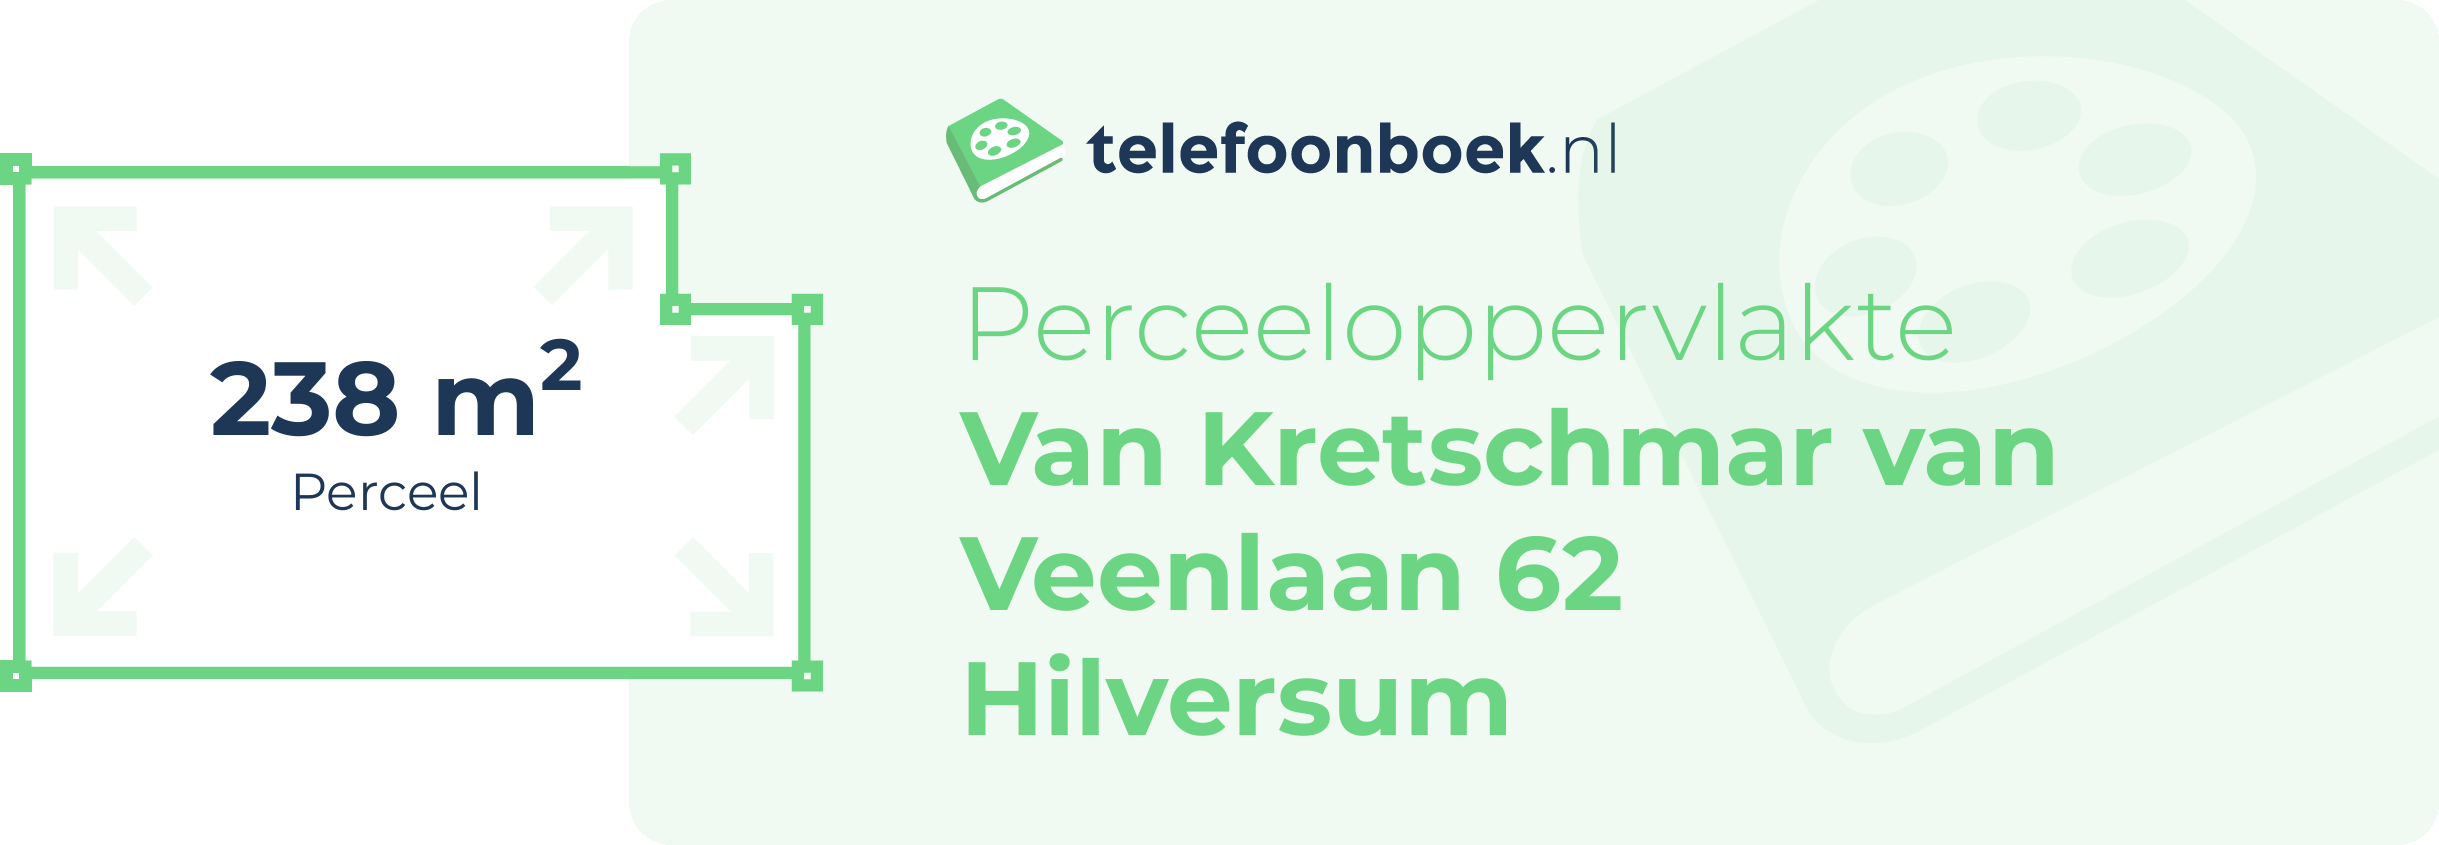 Perceeloppervlakte Van Kretschmar Van Veenlaan 62 Hilversum